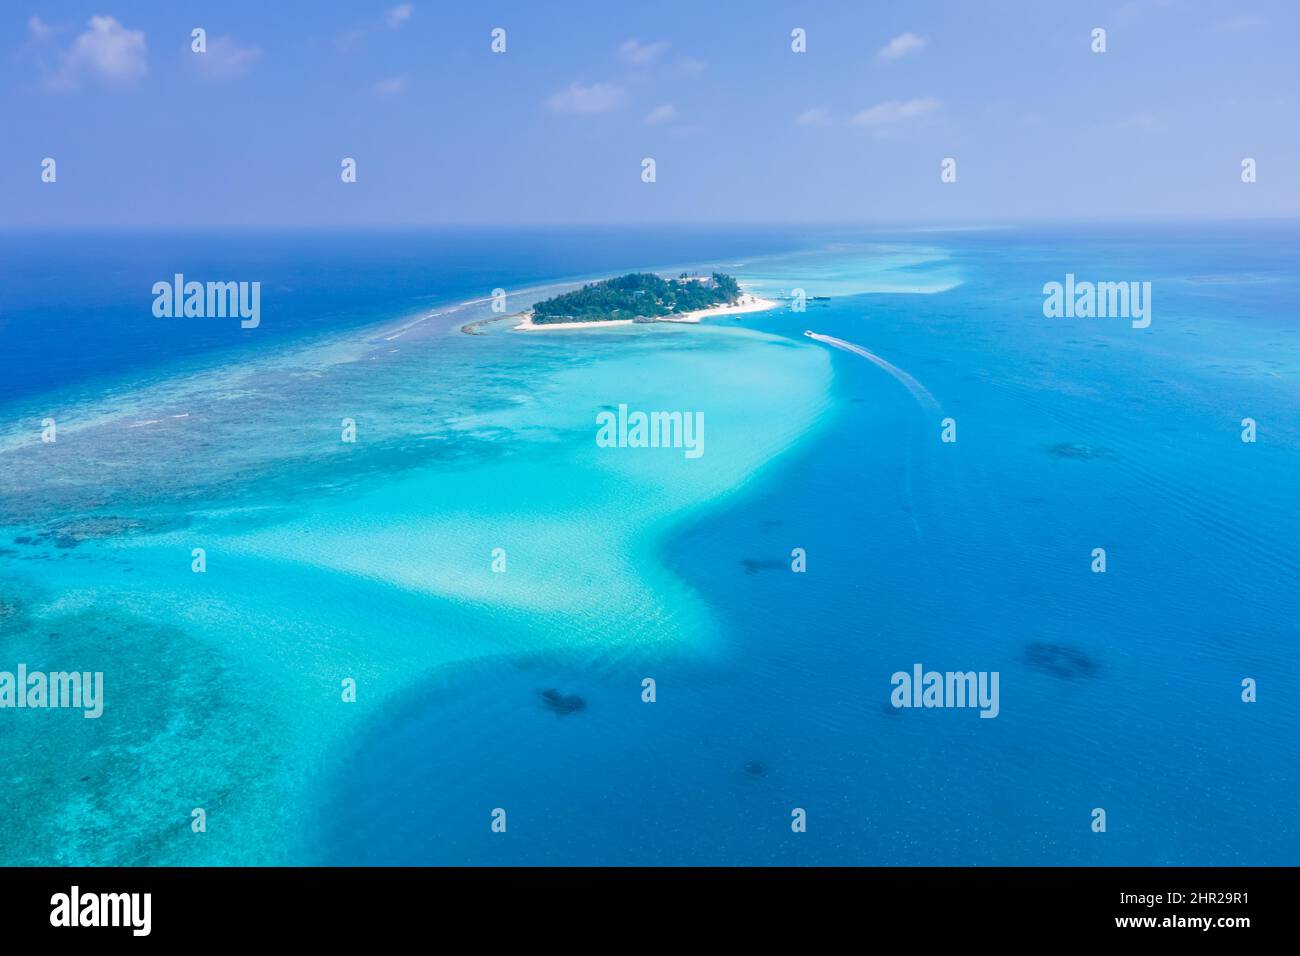 Isola Atoll con spiaggia di sabbia bianca, acqua turchese trasparente, barriera corallina, cielo blu. Perfetta destinazione di vacanza tropicale alle Maldive. Aer Foto Stock